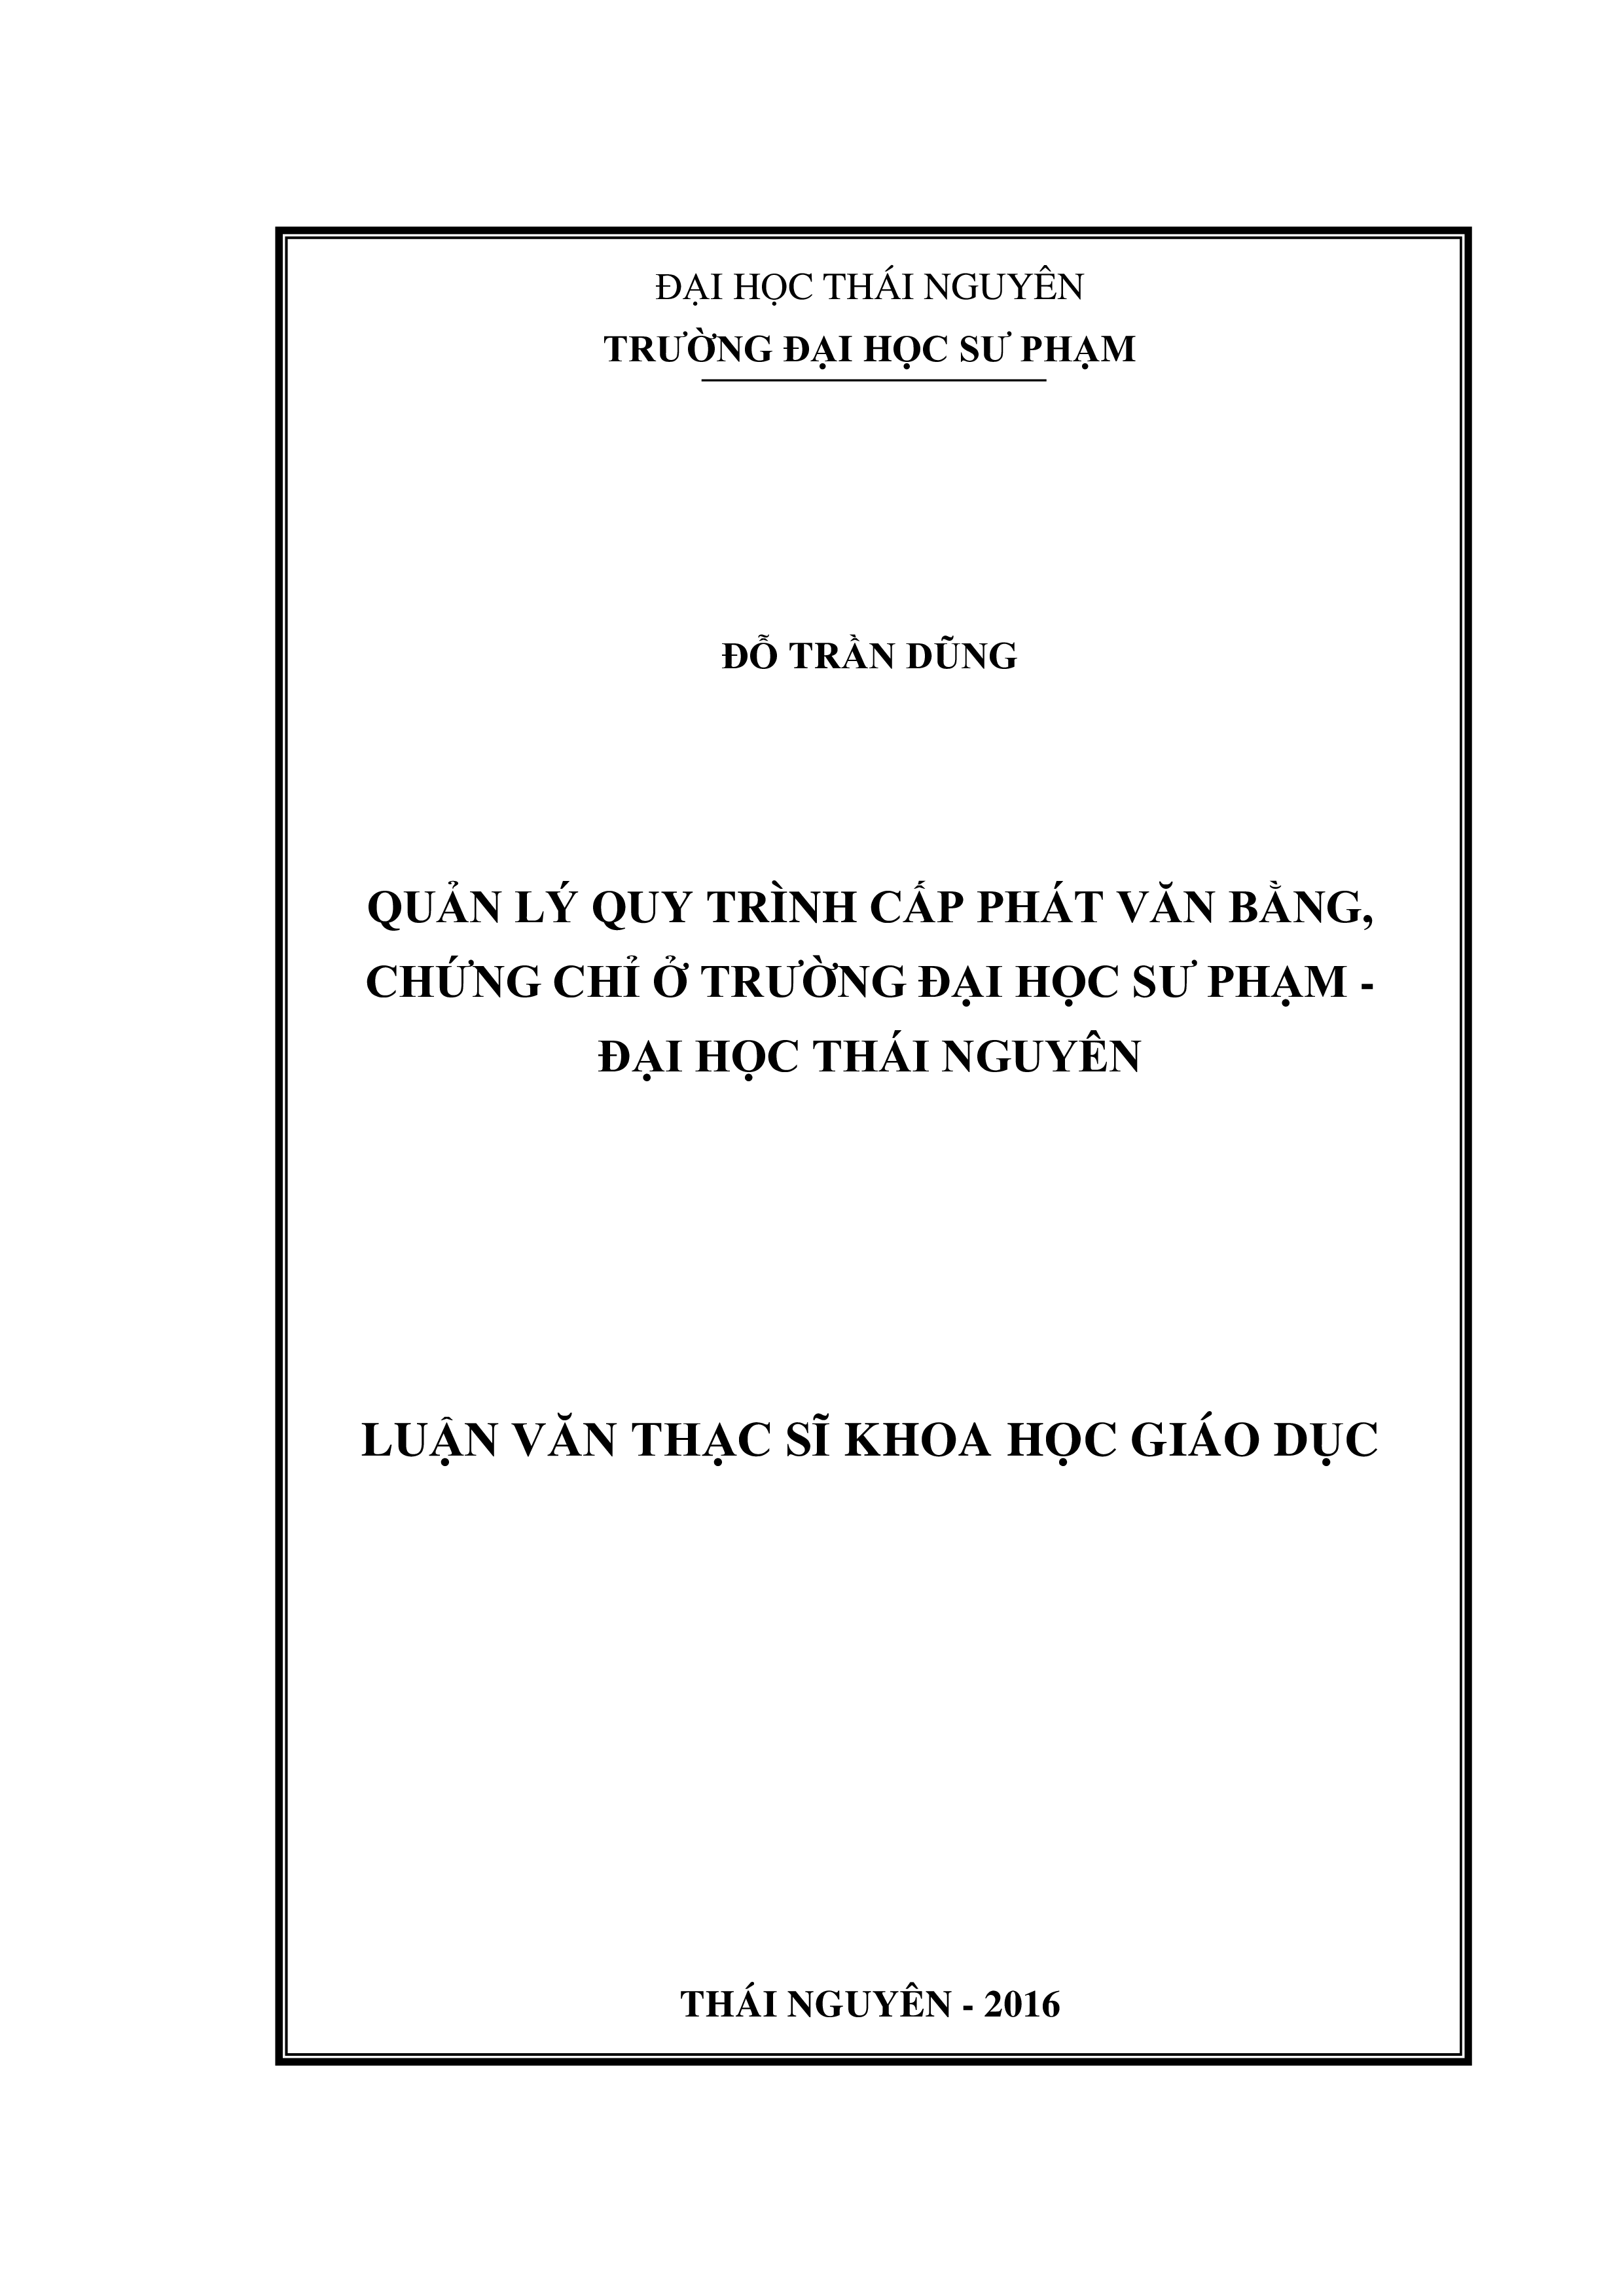 Quản lý quy trình  cấp phát văn bằng, chứng chỉ ở Trường Đại học Sư phạm Thái Nguyên - Đại  học Thái Nguyên